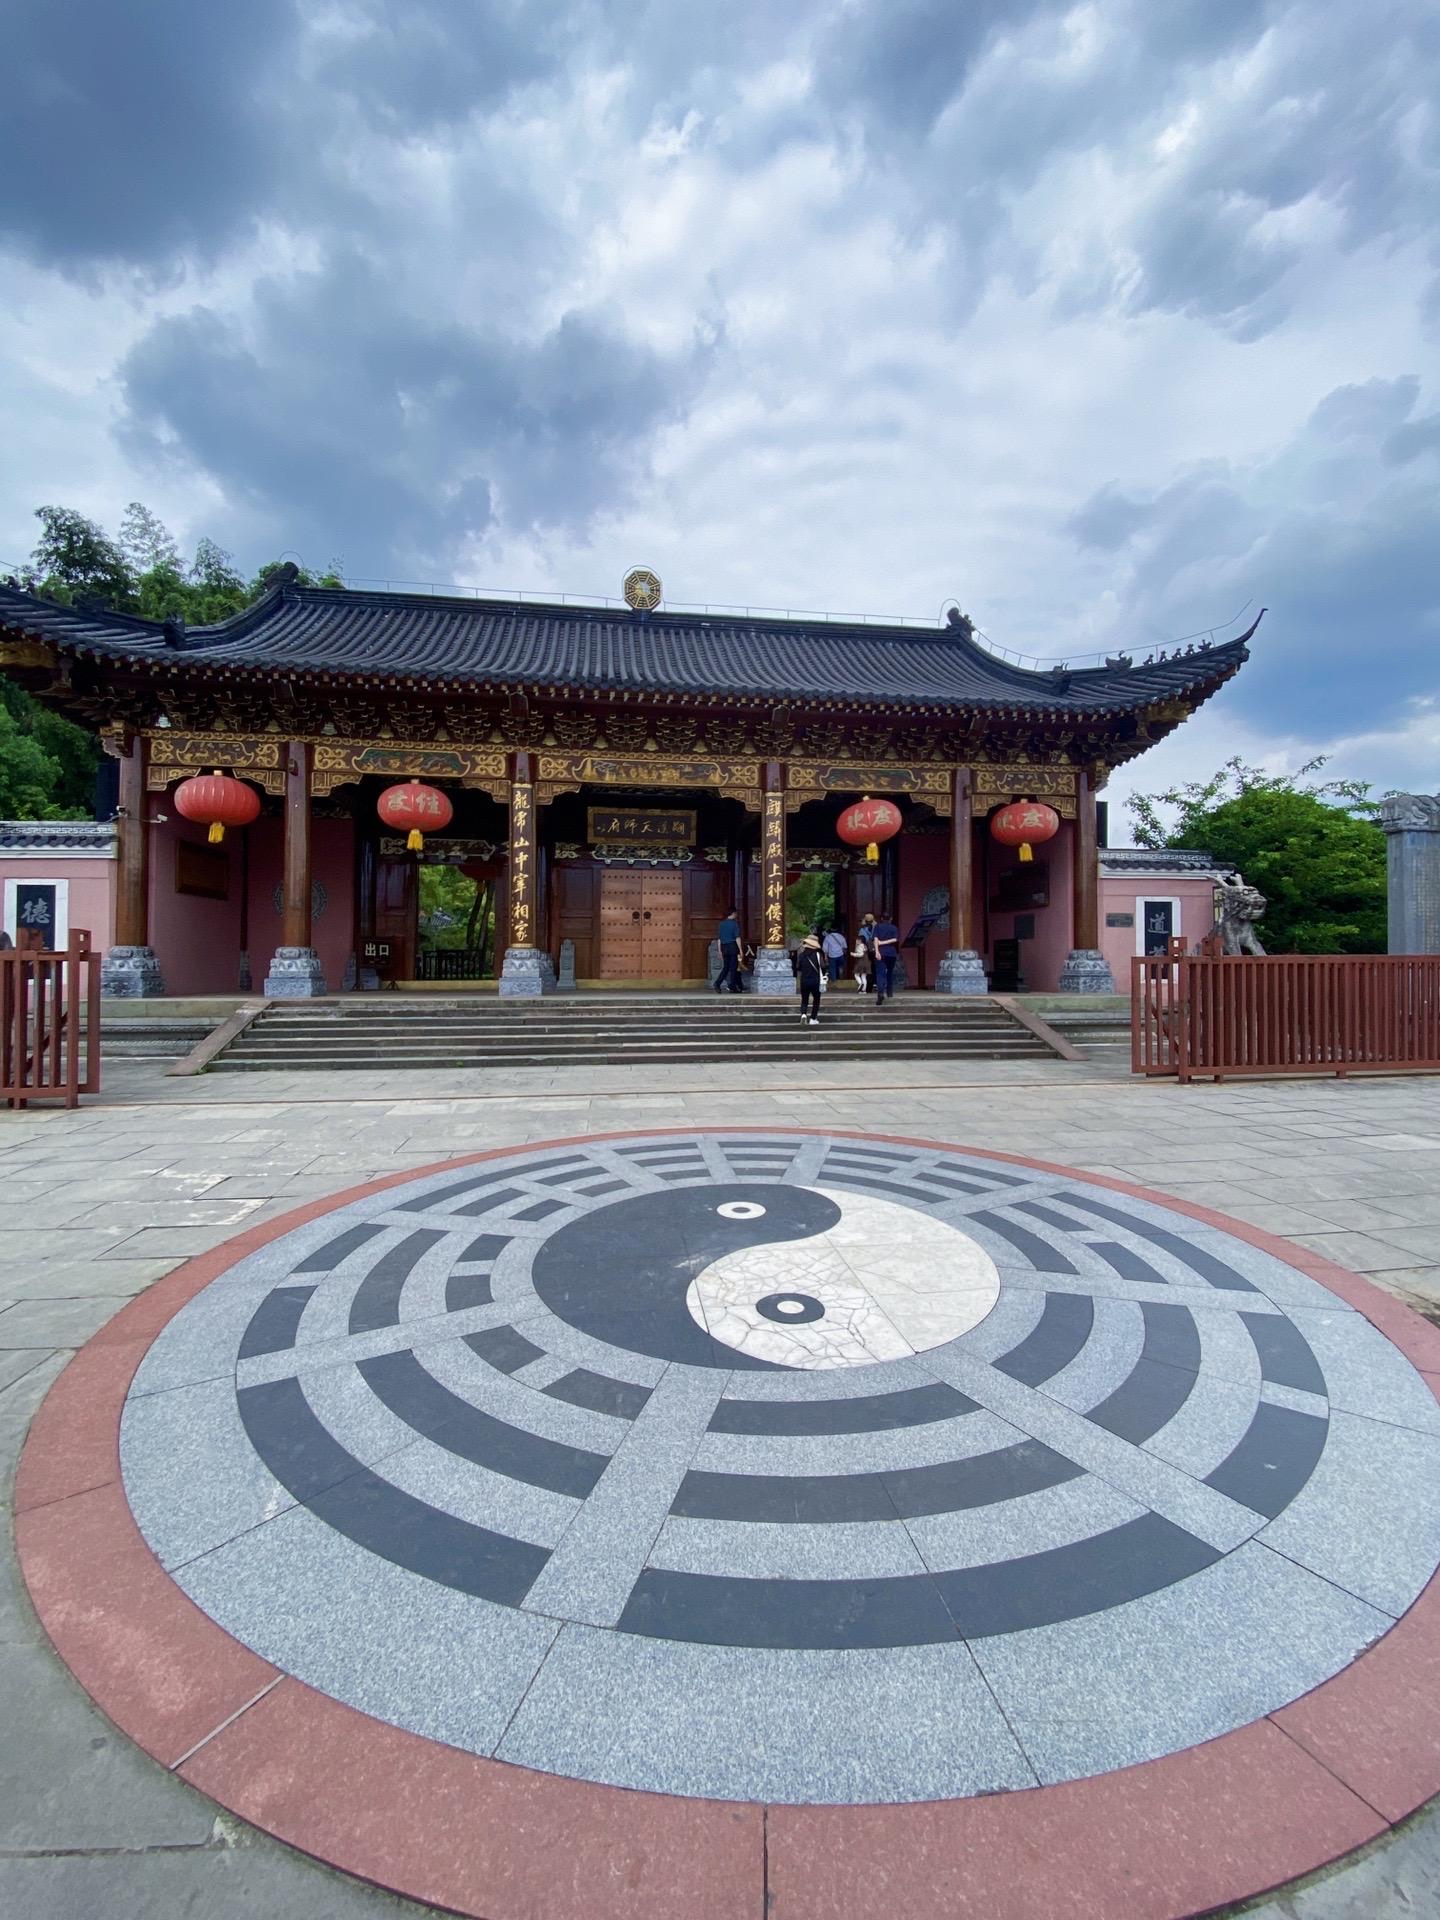 龙虎山景区位于江西省鹰潭市，是一个集自然风光和道教文化于一体的著名旅游胜地。对于首次来访的游客，可能